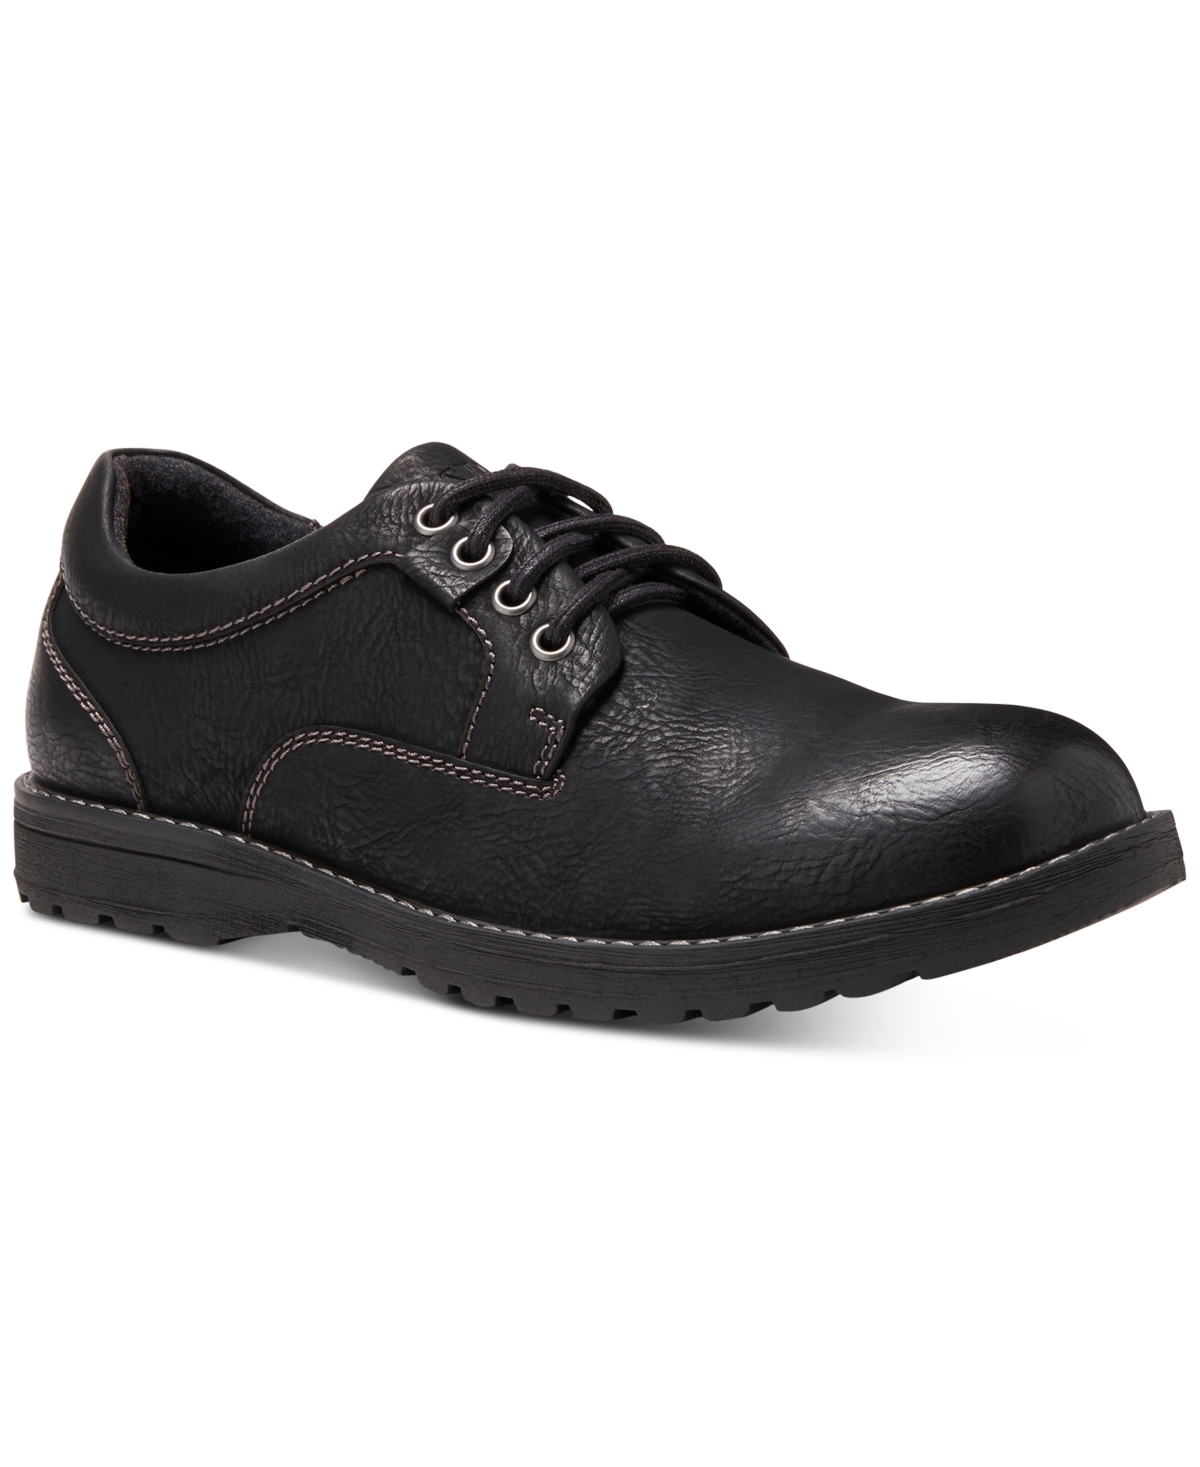 Men's Dante Oxford Shoes - Black